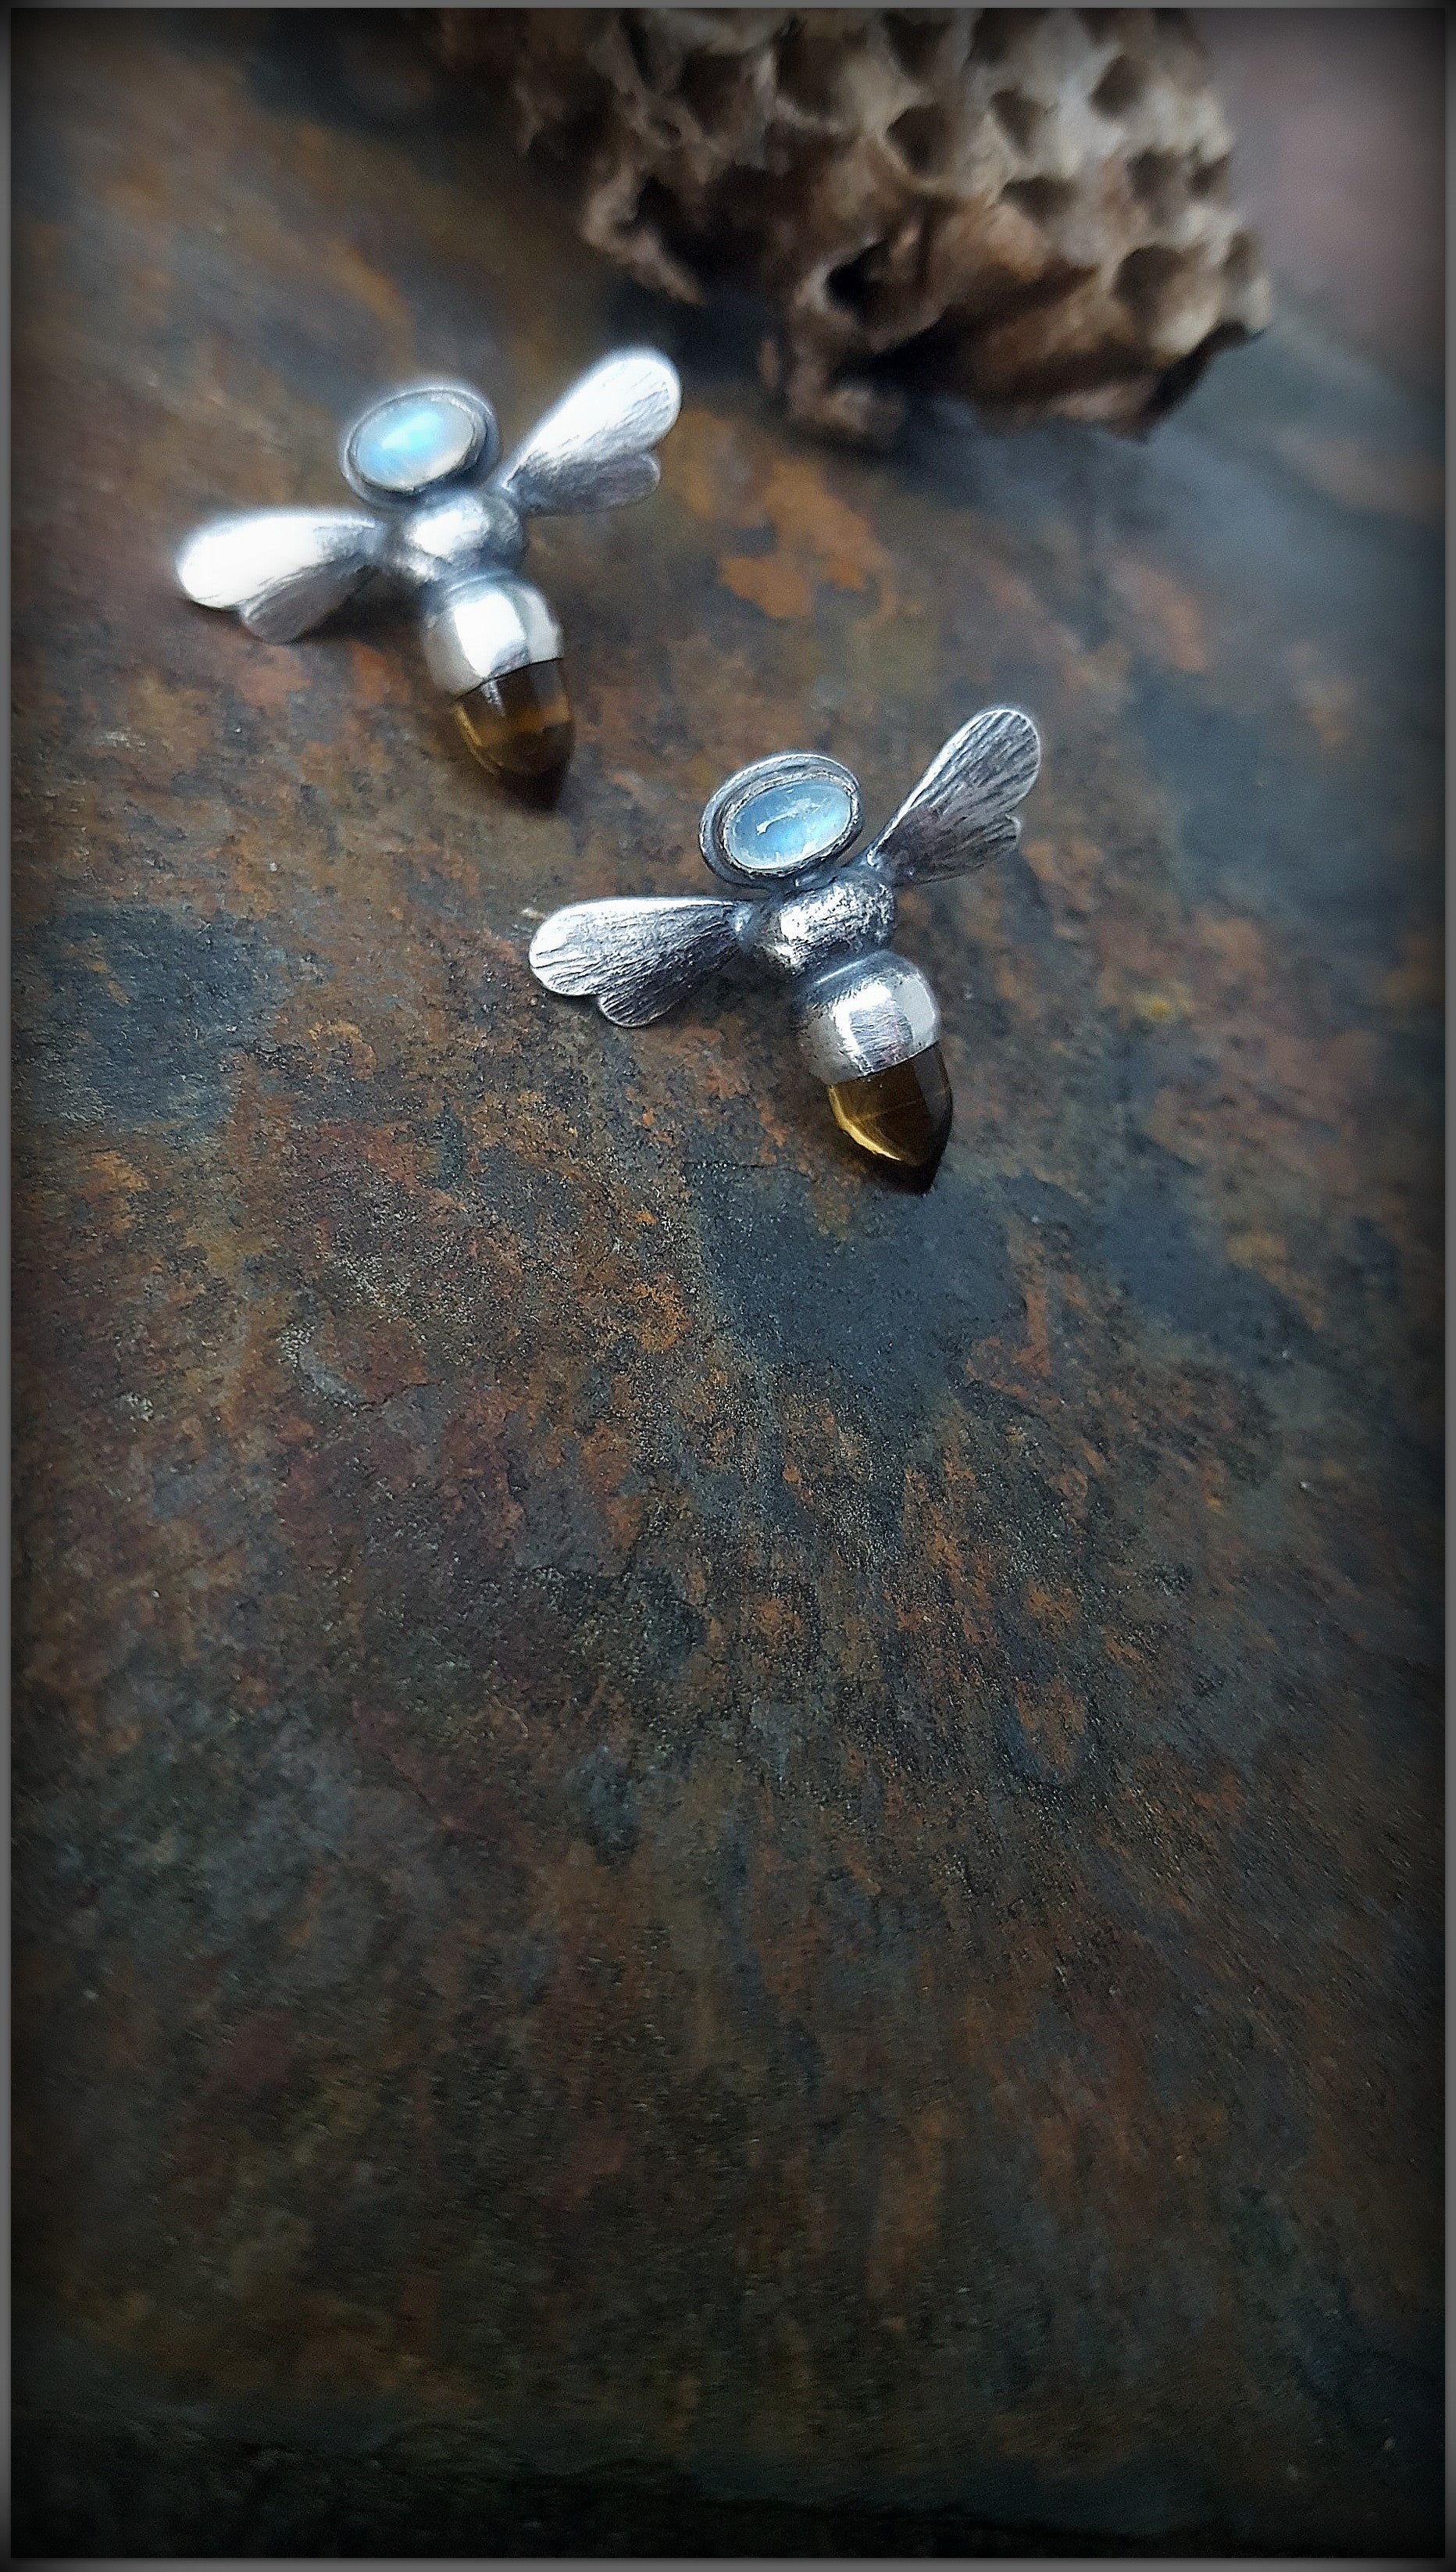 Sterling Honey Bee Earring with Gemstones